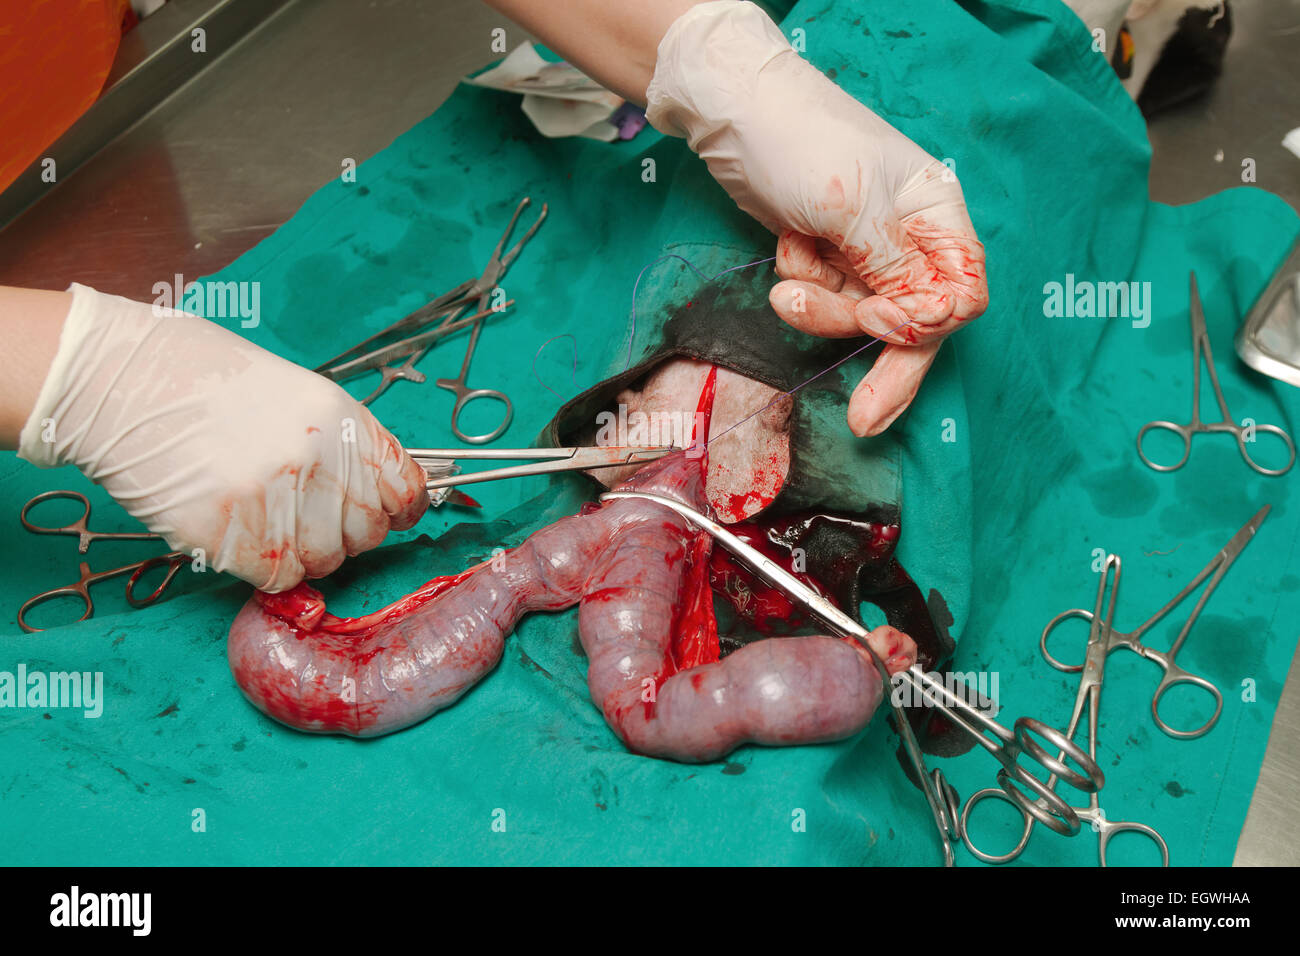 Hund in einer Tierarztpraxis, Chirurgie der Pyometra (Infektion der  Gebärmutter Stockfotografie - Alamy